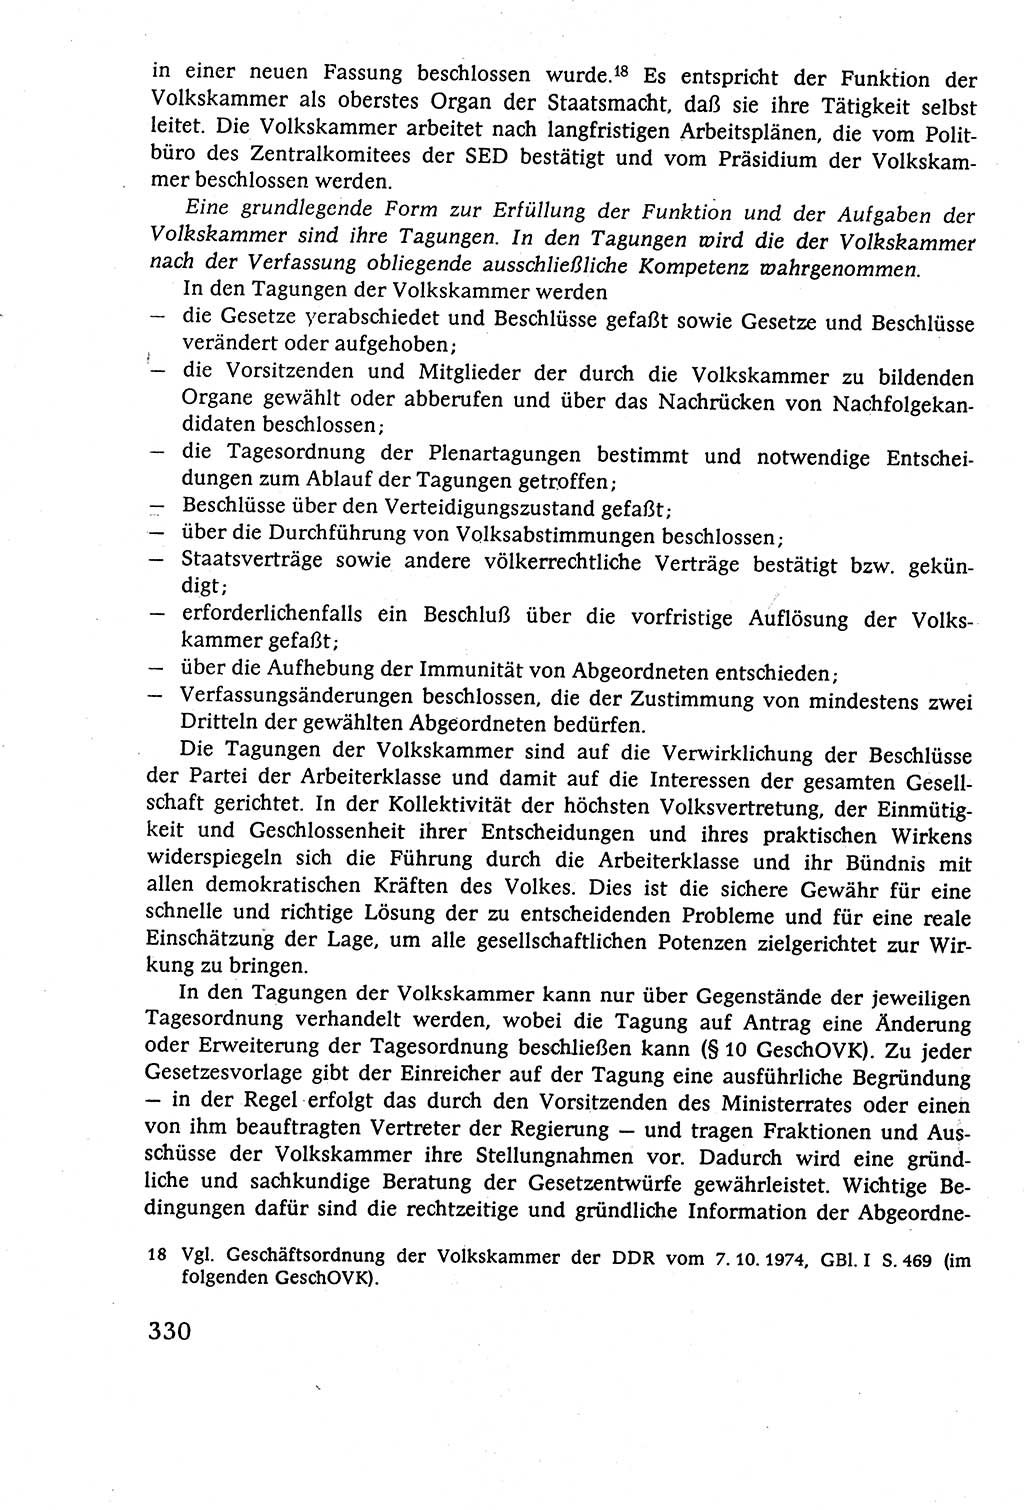 Staatsrecht der DDR (Deutsche Demokratische Republik), Lehrbuch 1977, Seite 330 (St.-R. DDR Lb. 1977, S. 330)